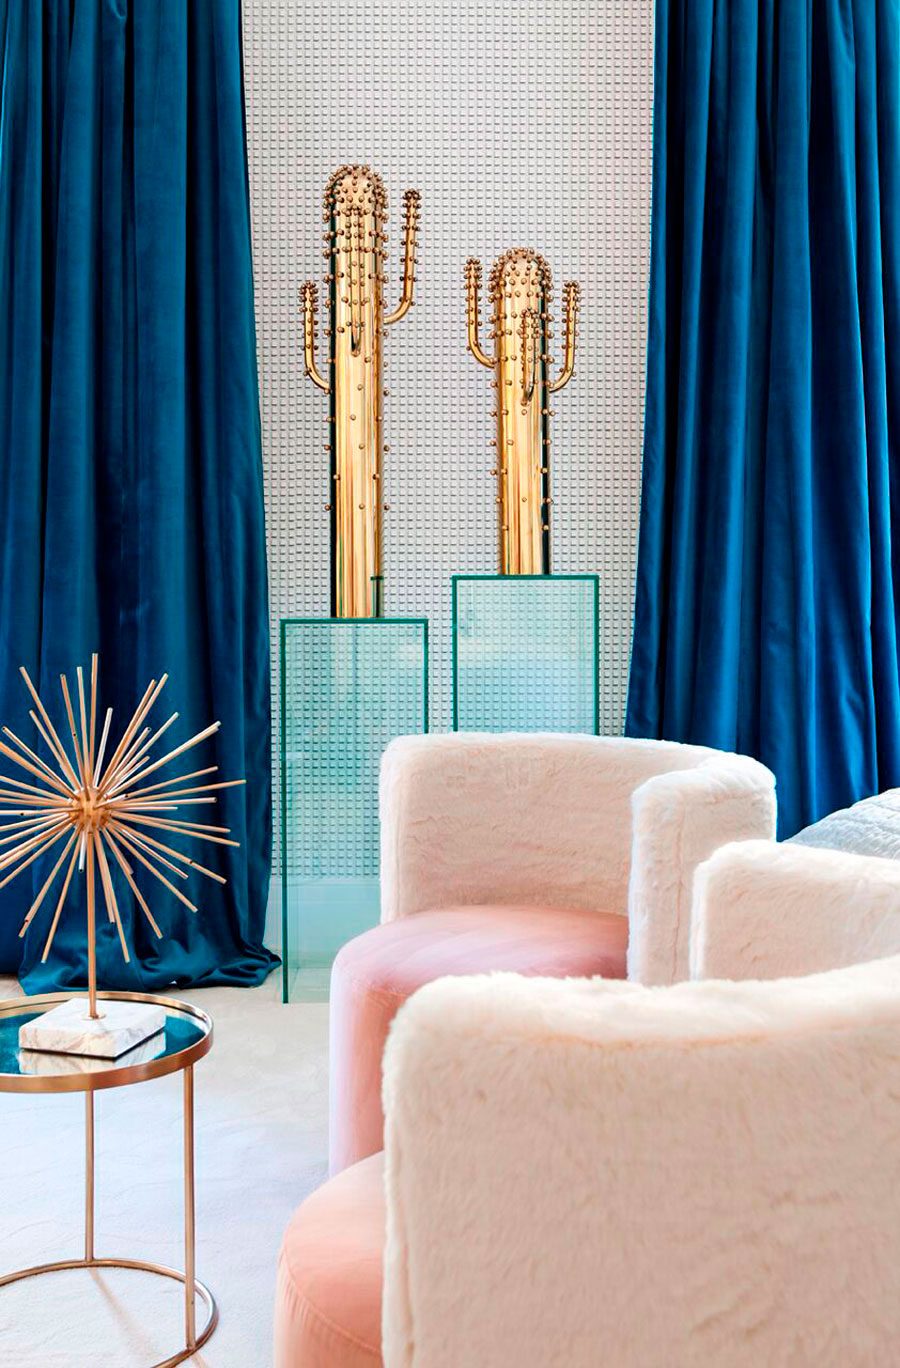 terciopelo en cortinas y muebles hace tu decoración más sofisticada